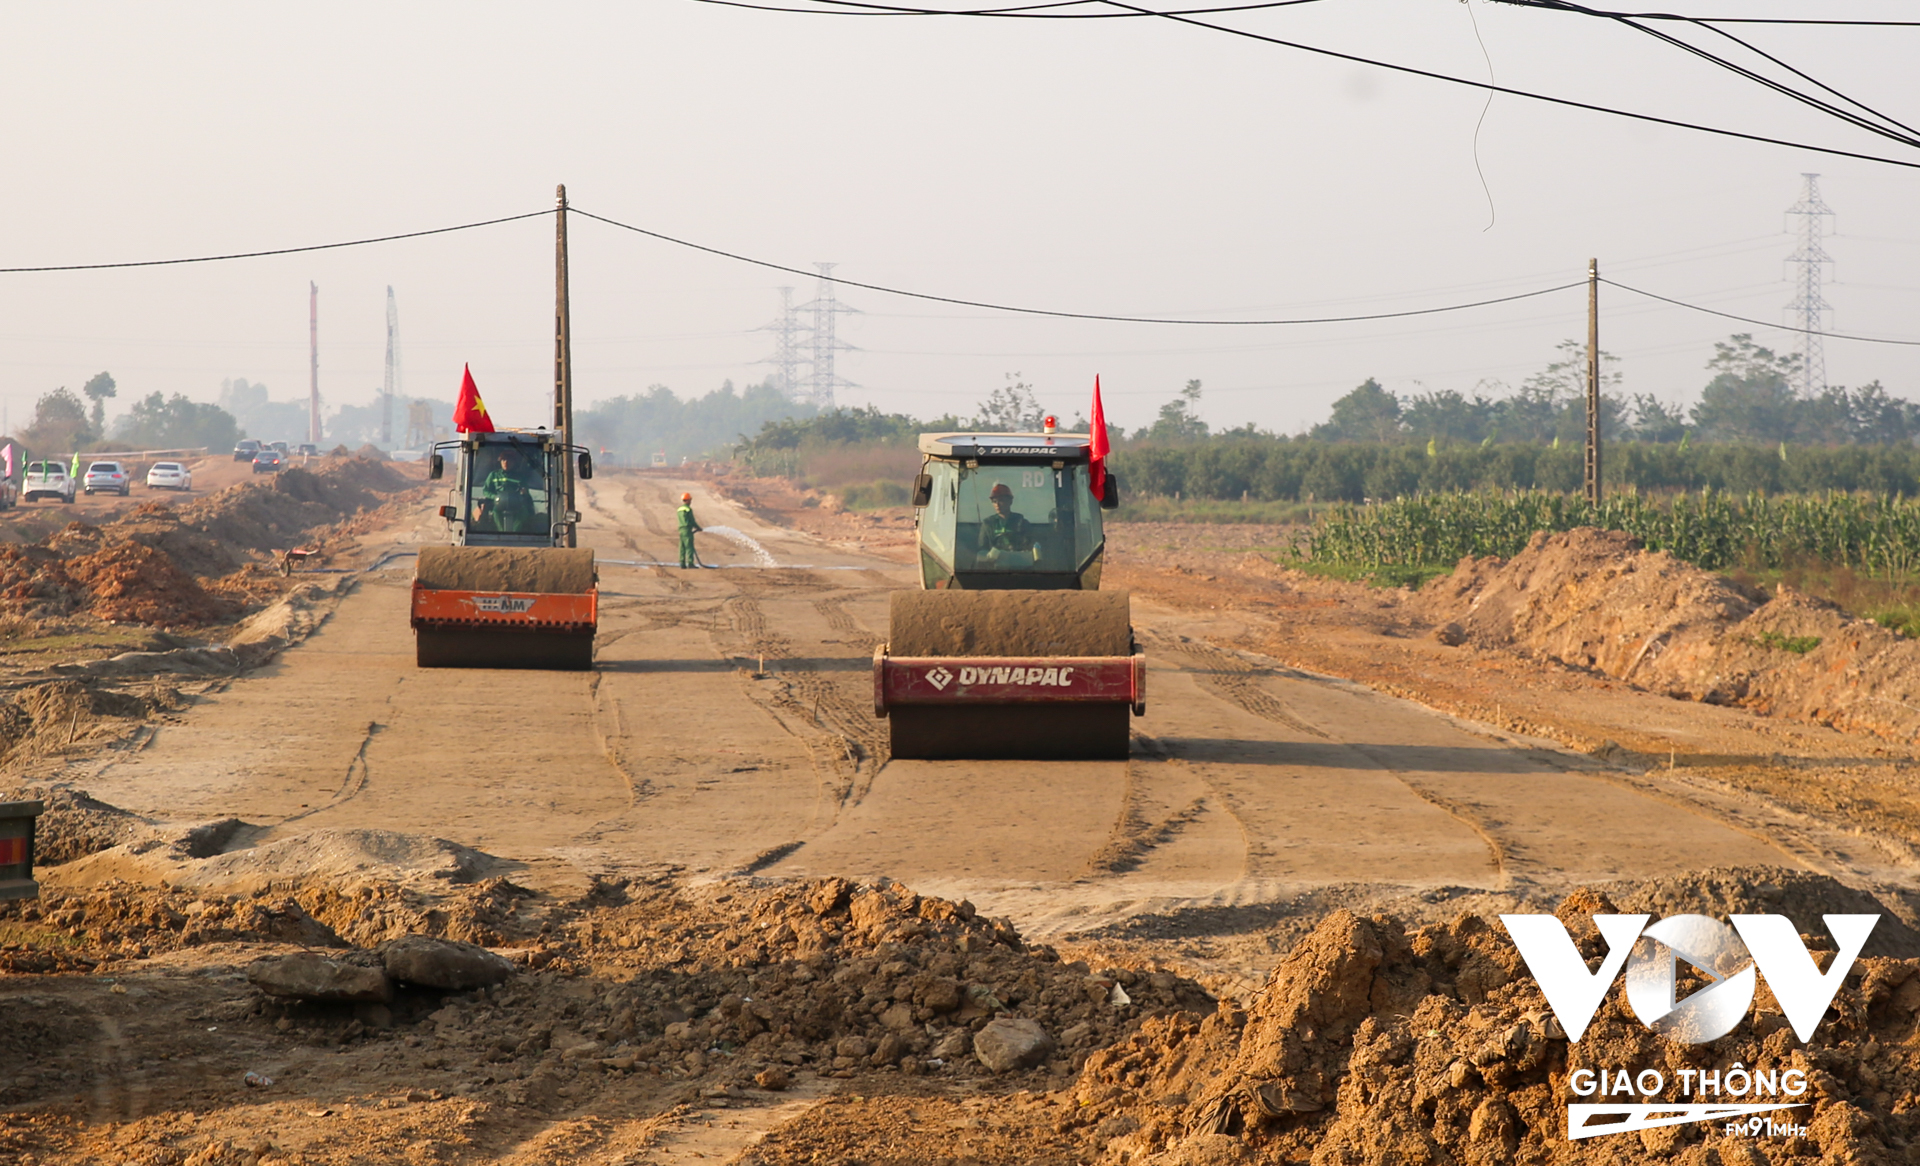 Riêng nguồn vật liệu đăng ký khai thác theo cơ chế đặc thù, mỏ cát Chu Phan đã được UBND thành phố Hà Nội chấp thuận hồ sơ đăng ký của nhà thầu với trữ lượng khai thác 0,744 triệu m3. (Ảnh: Kiểm tra thực địa tại huyện Mê Linh - Vị trí giao với đường Ngô Miễn, Km2+960)